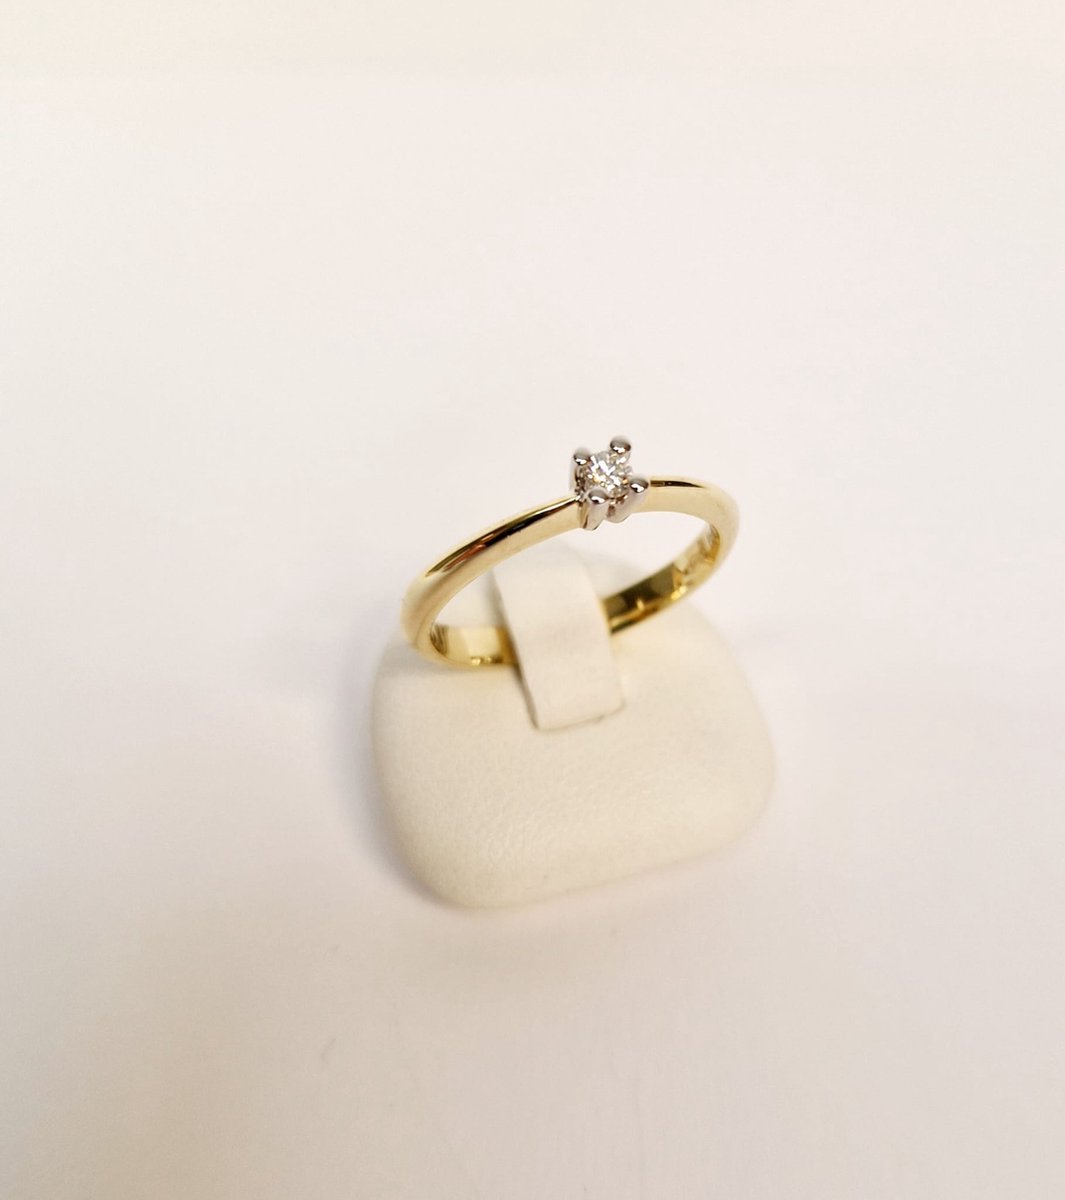 Geel/witgouden - damesring - 14karaat – diamant – 0.07crt - uitverkoop Juwelier Verlinden St. Hubert - van €599,= voor €469,=